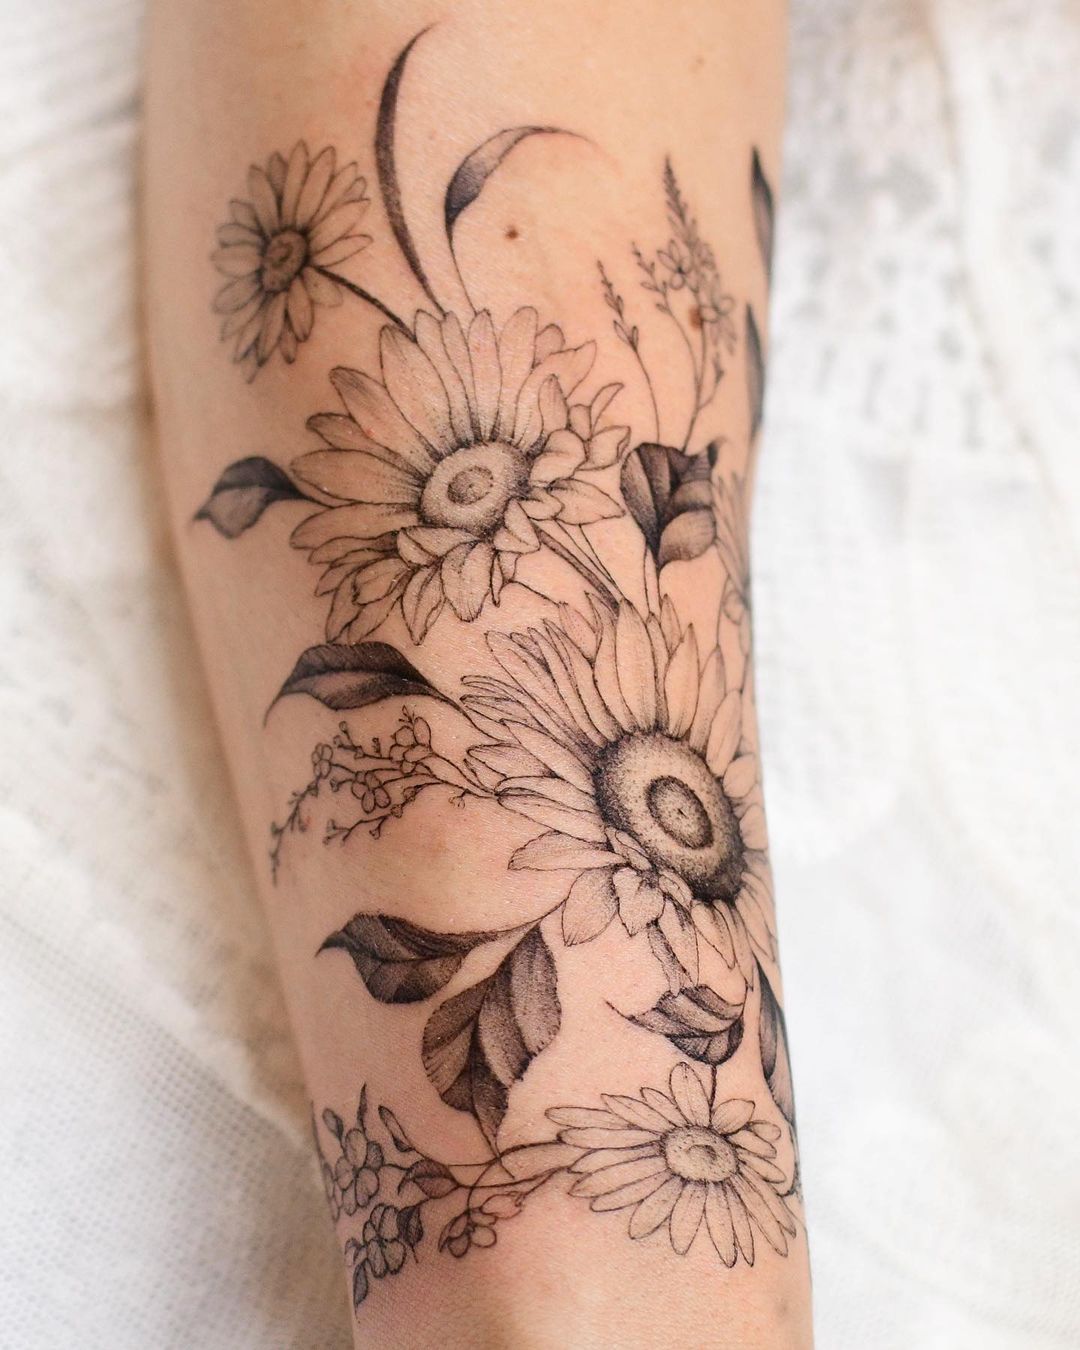 Black and white sunflower tattoo by yerae tt